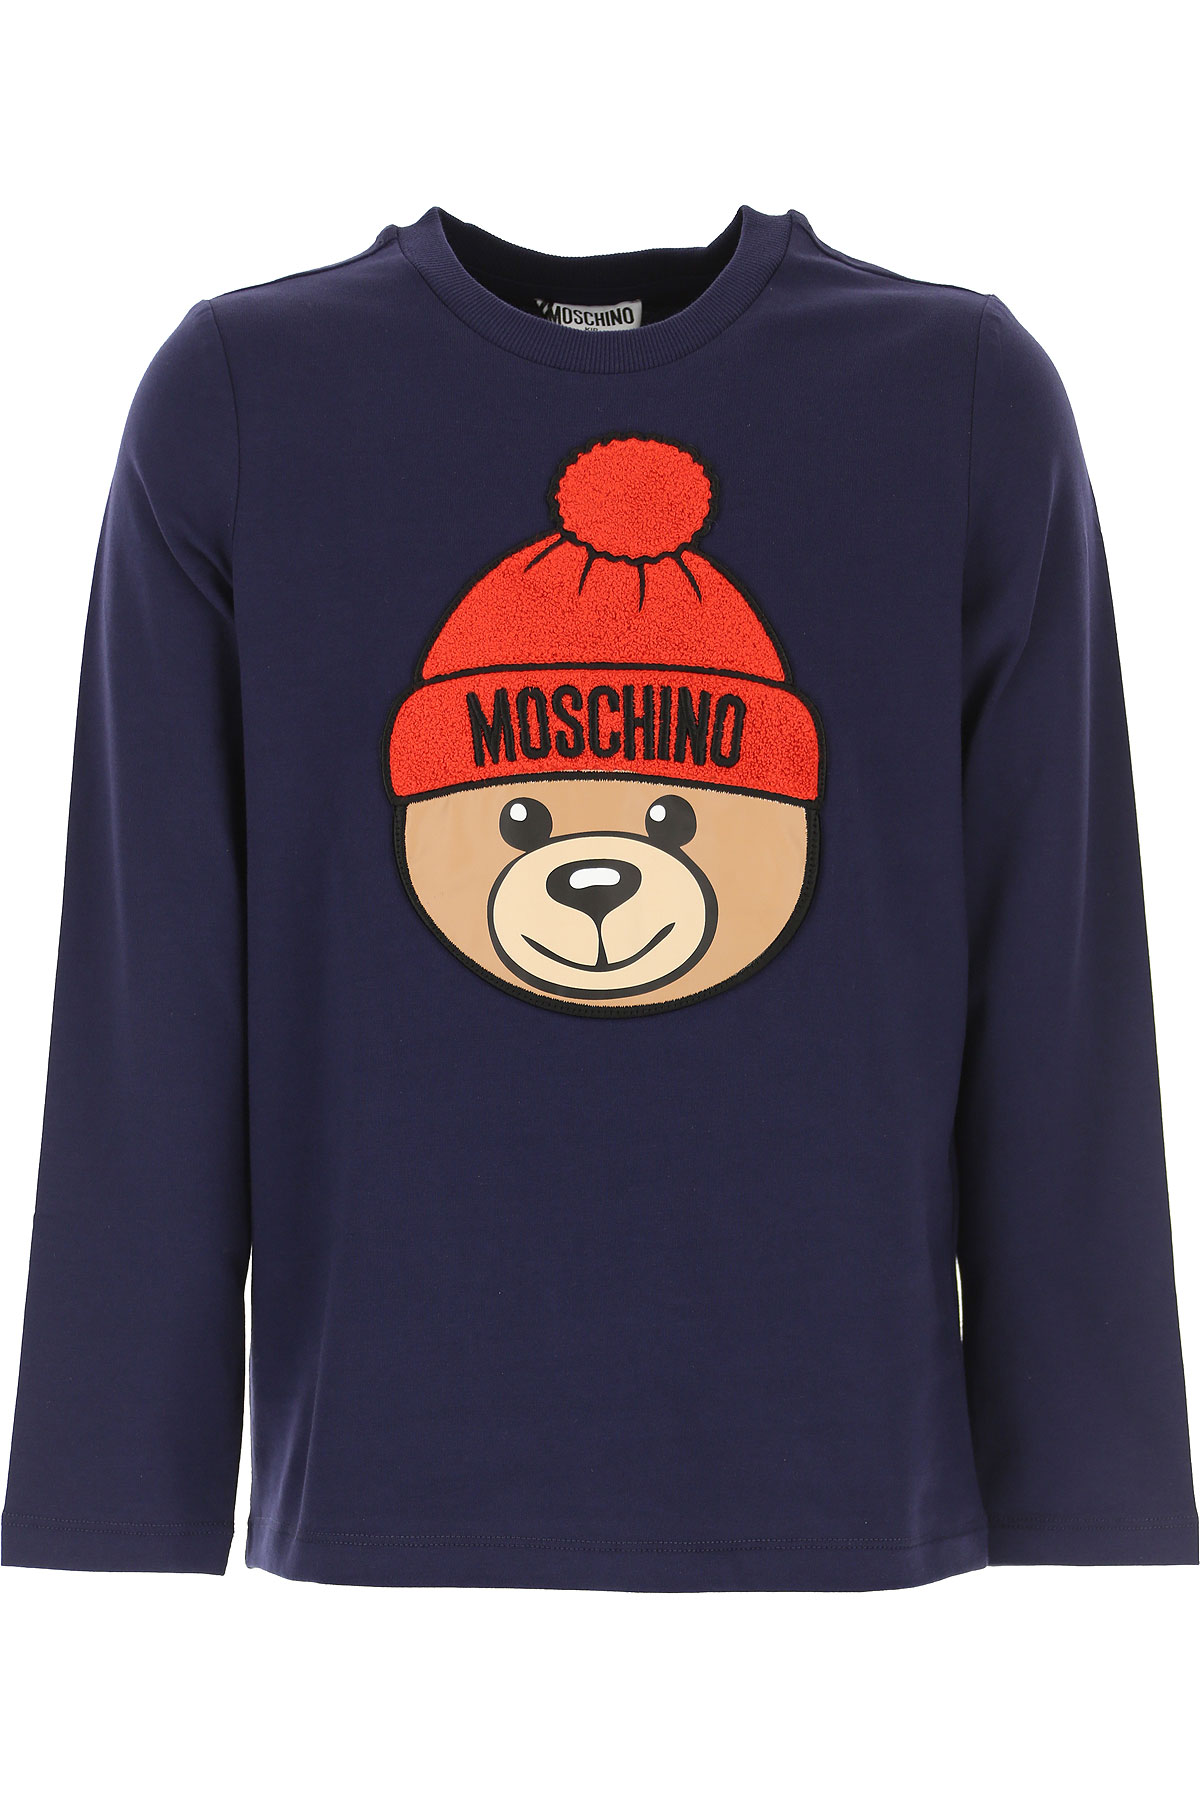 Moschino Kinder T-Shirt für Mädchen Günstig im Sale, Blau, Baumwolle, 2017, 4Y 8Y